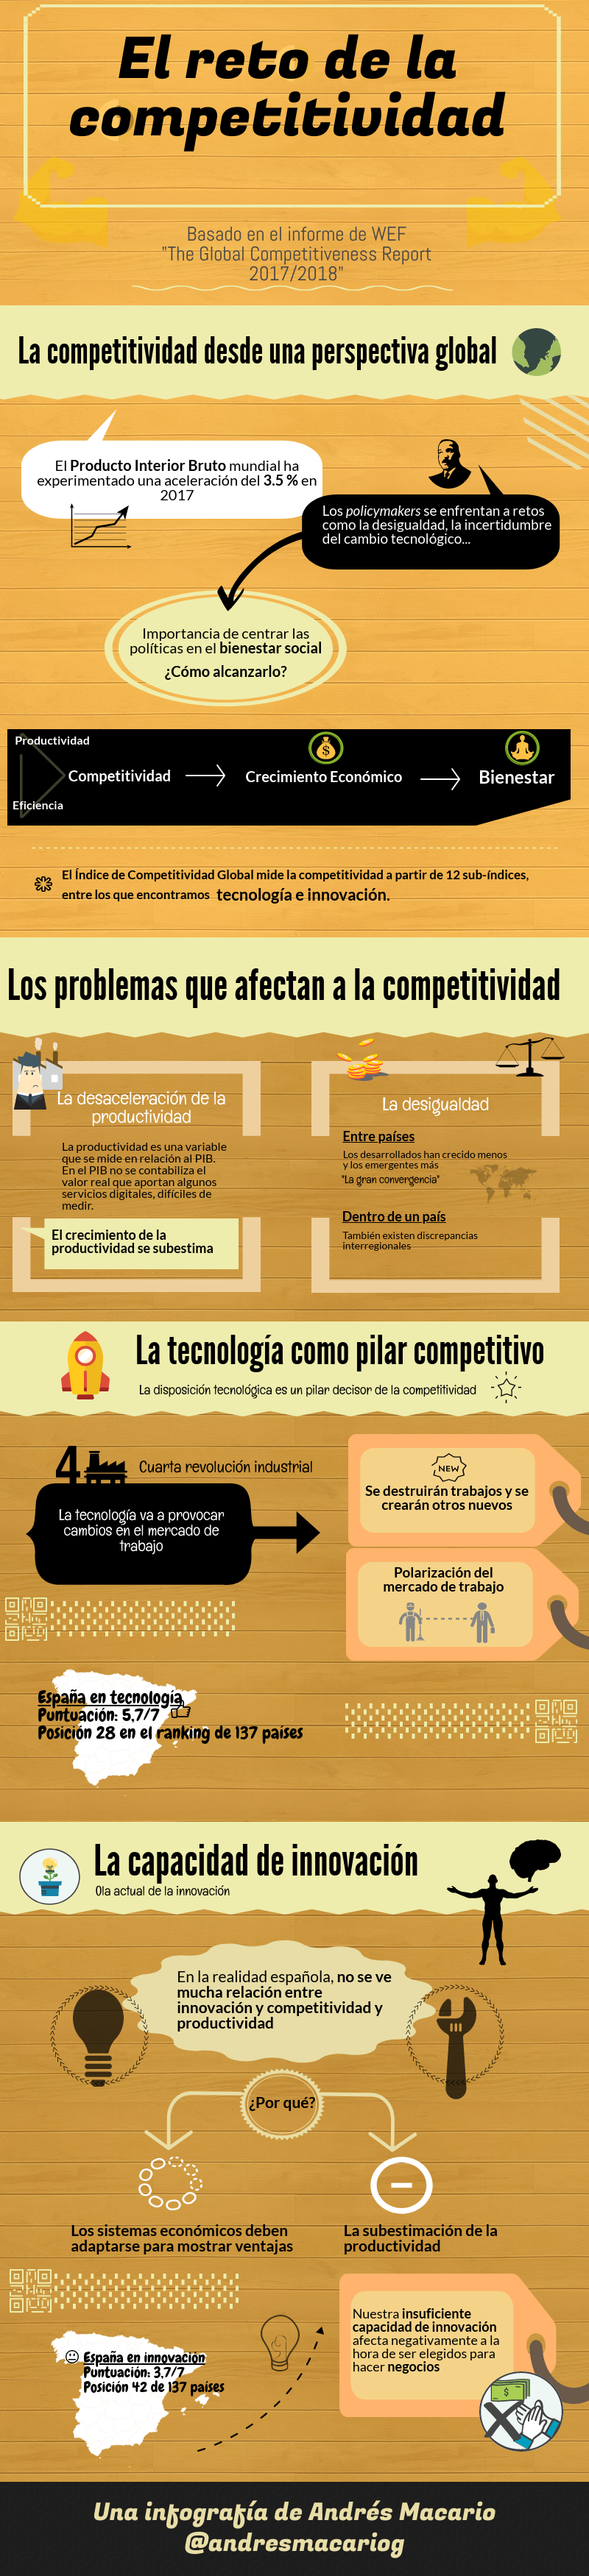 El reto de la competitividad en España - infografía de Andrés Macario